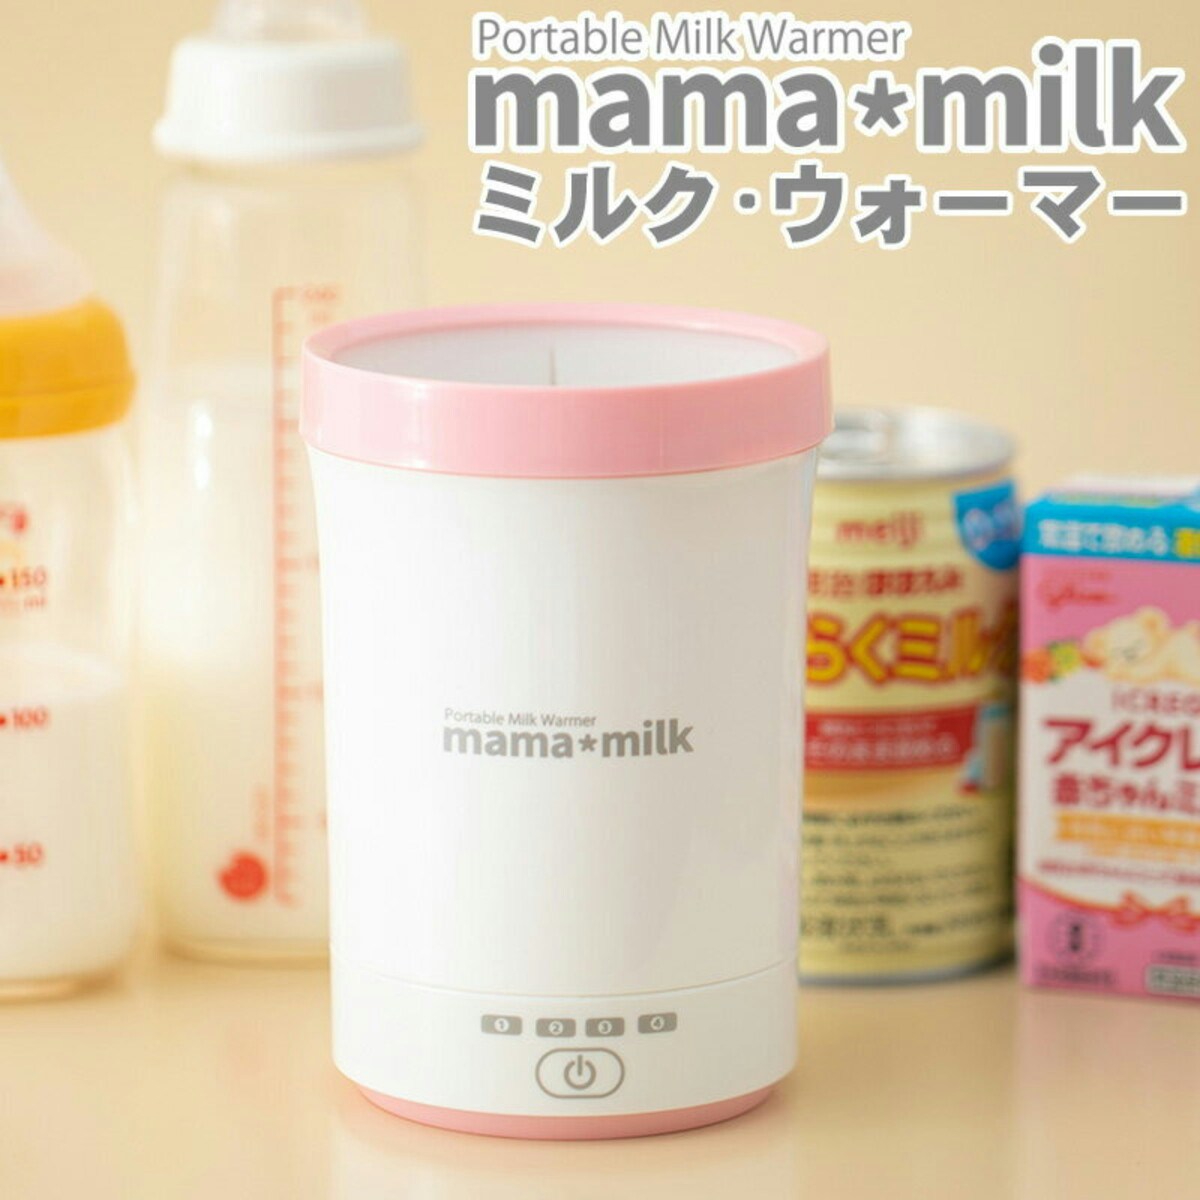 ミルクウォーマー「mama milk(ママミルク)」 